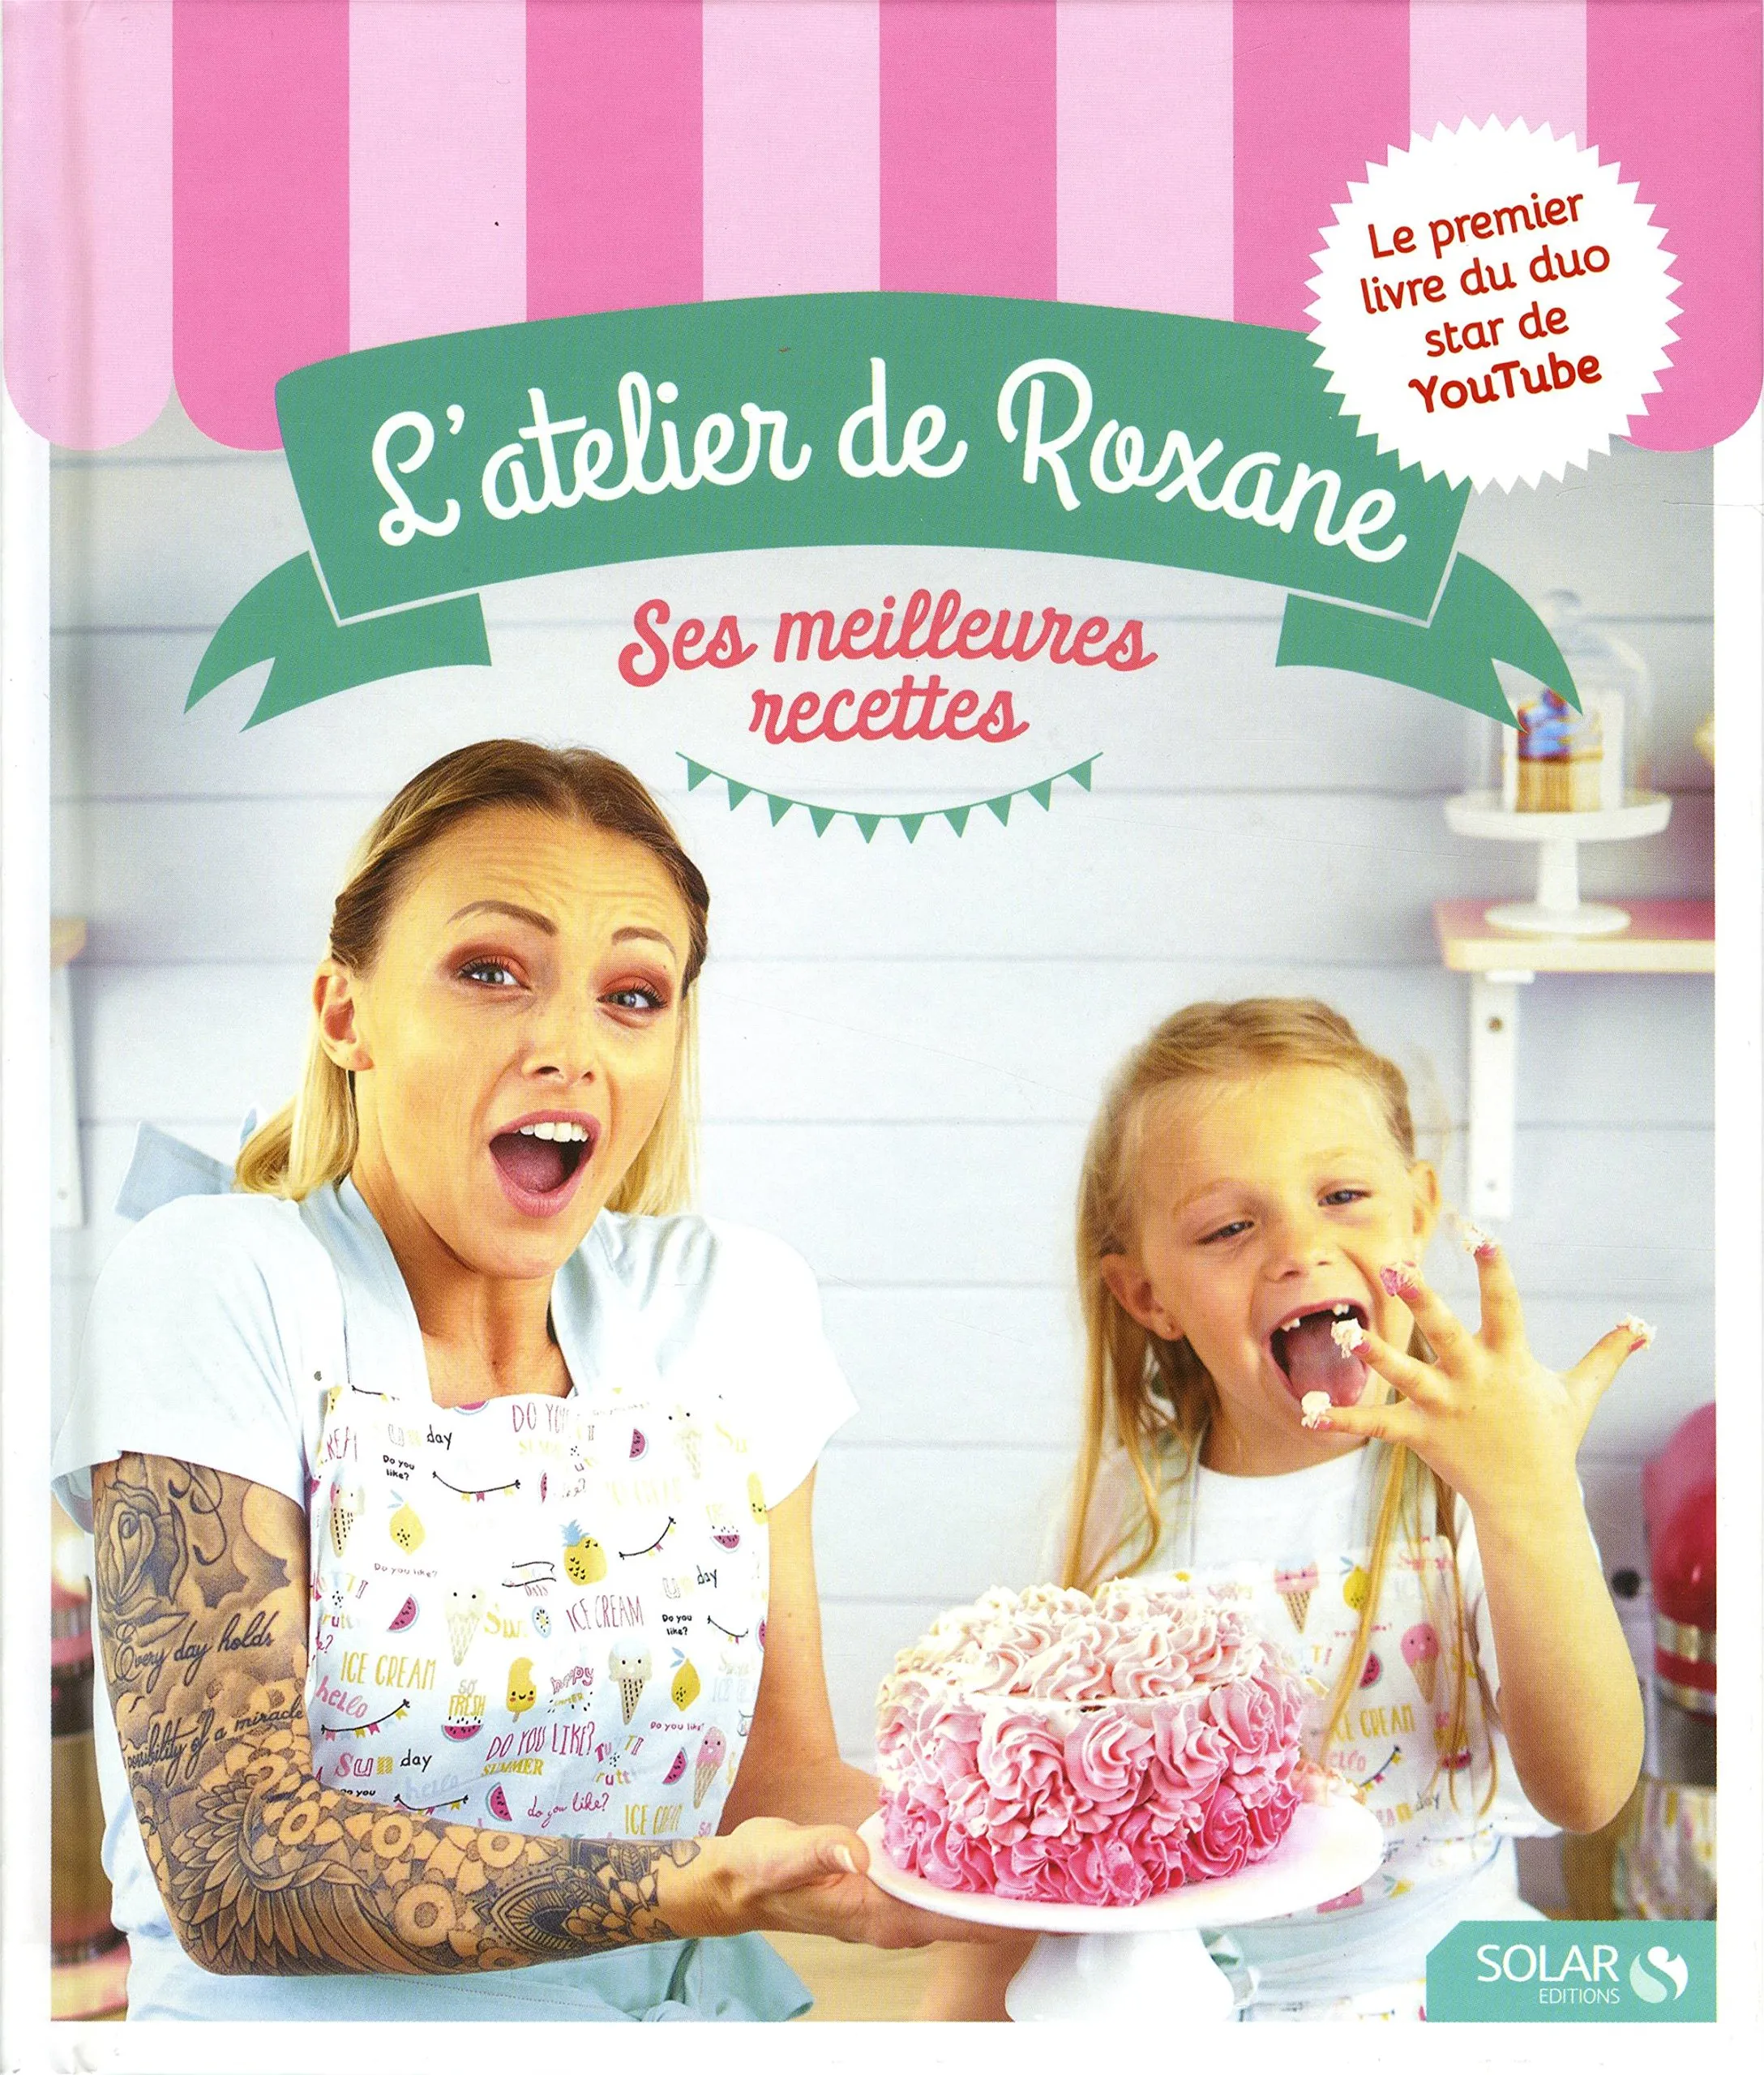 Livre de recettes Vive Les Desserts + livre enfant